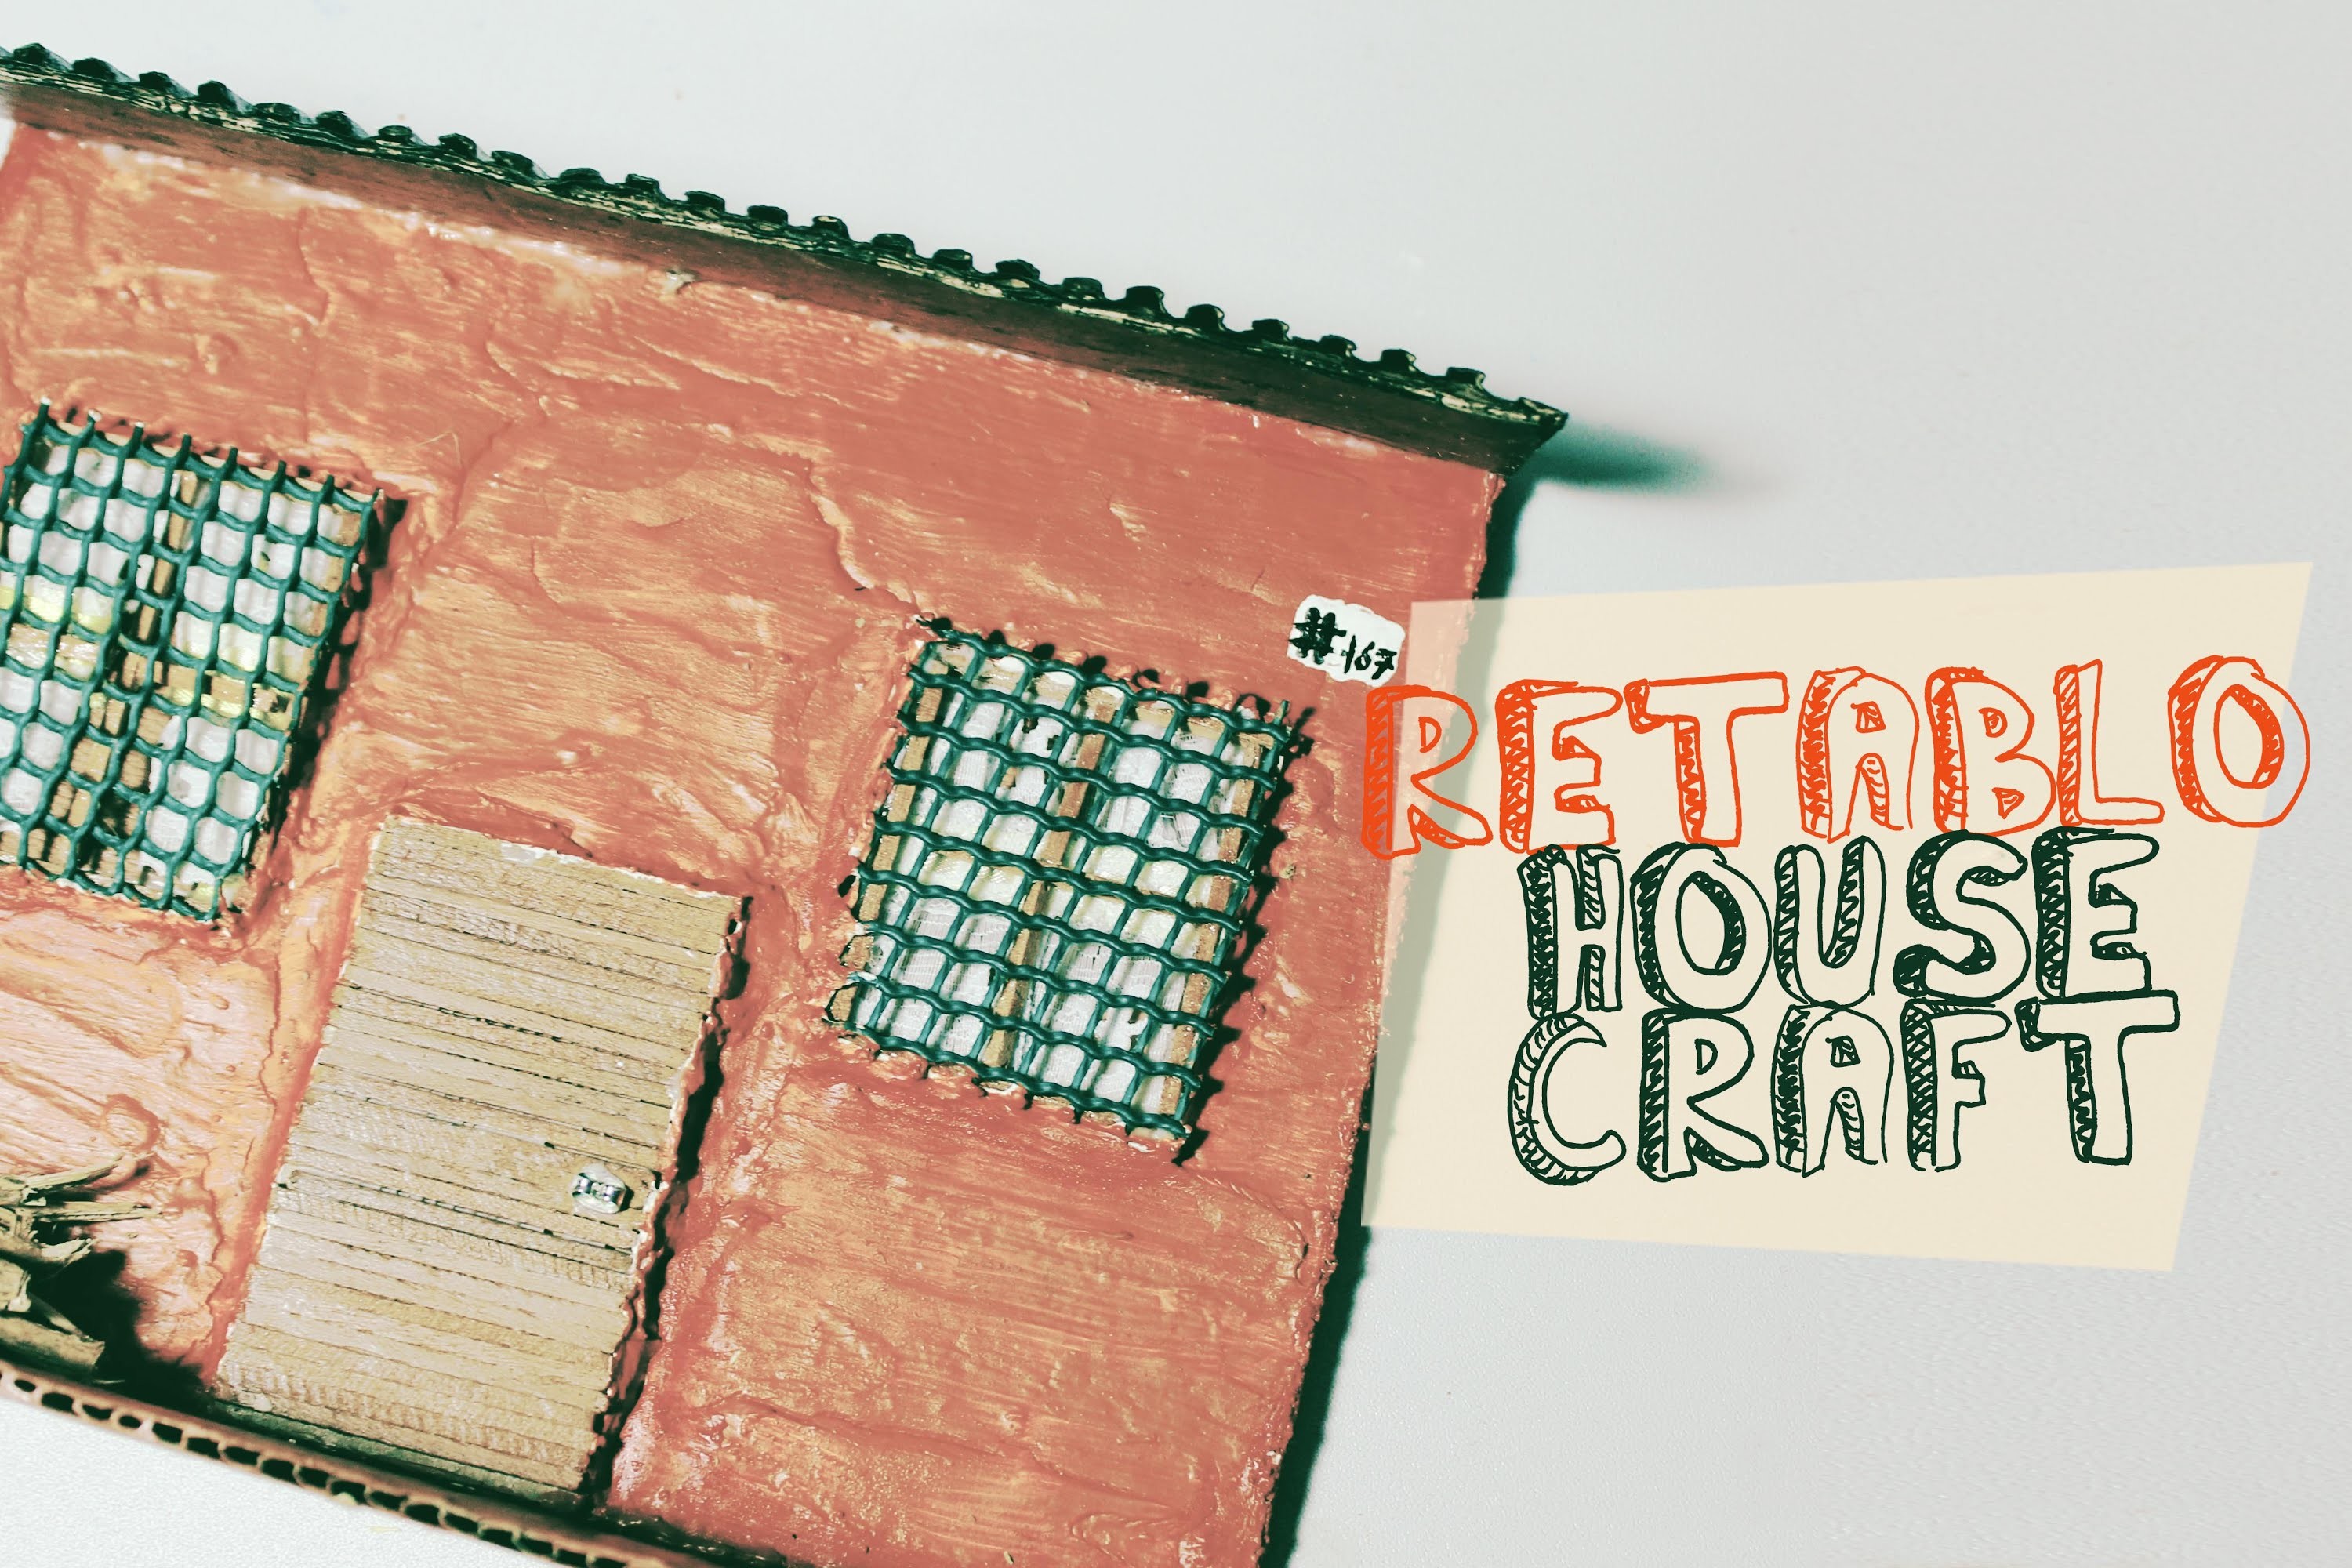 Retablo de casas. model of house craft